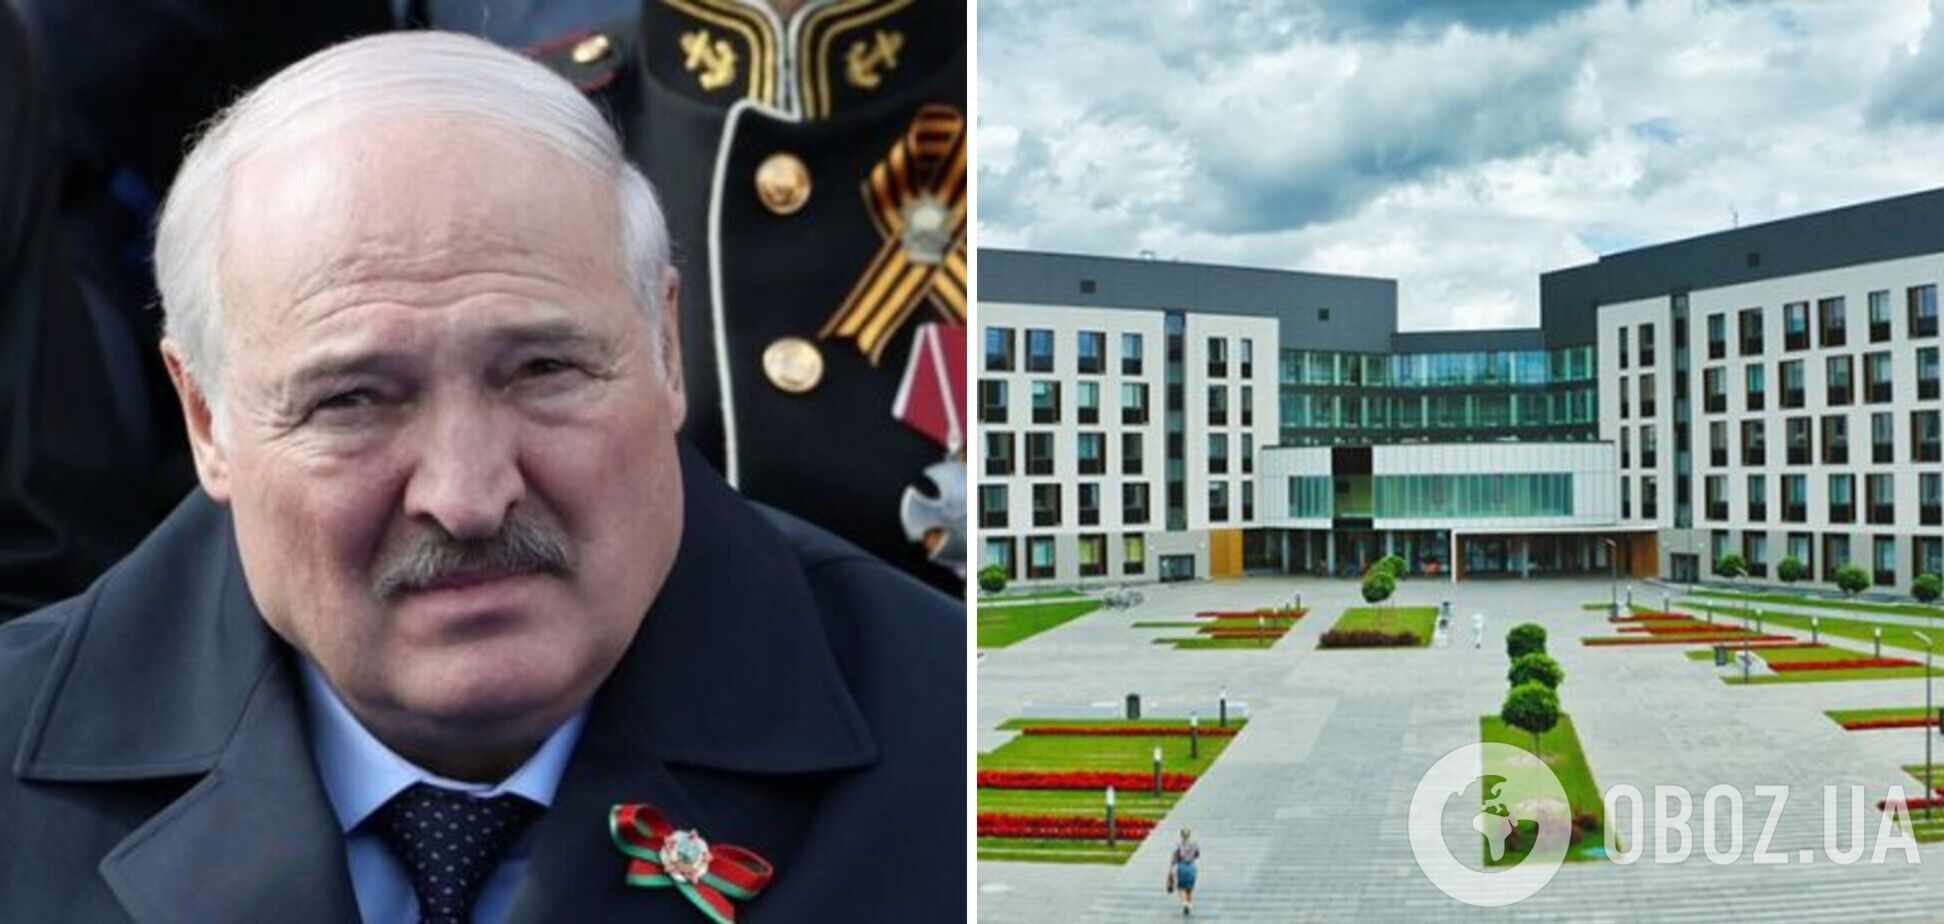 Лукашенко приехал в президентскую клинику в Дроздах после слухов о проблемах со здоровьем – СМИ